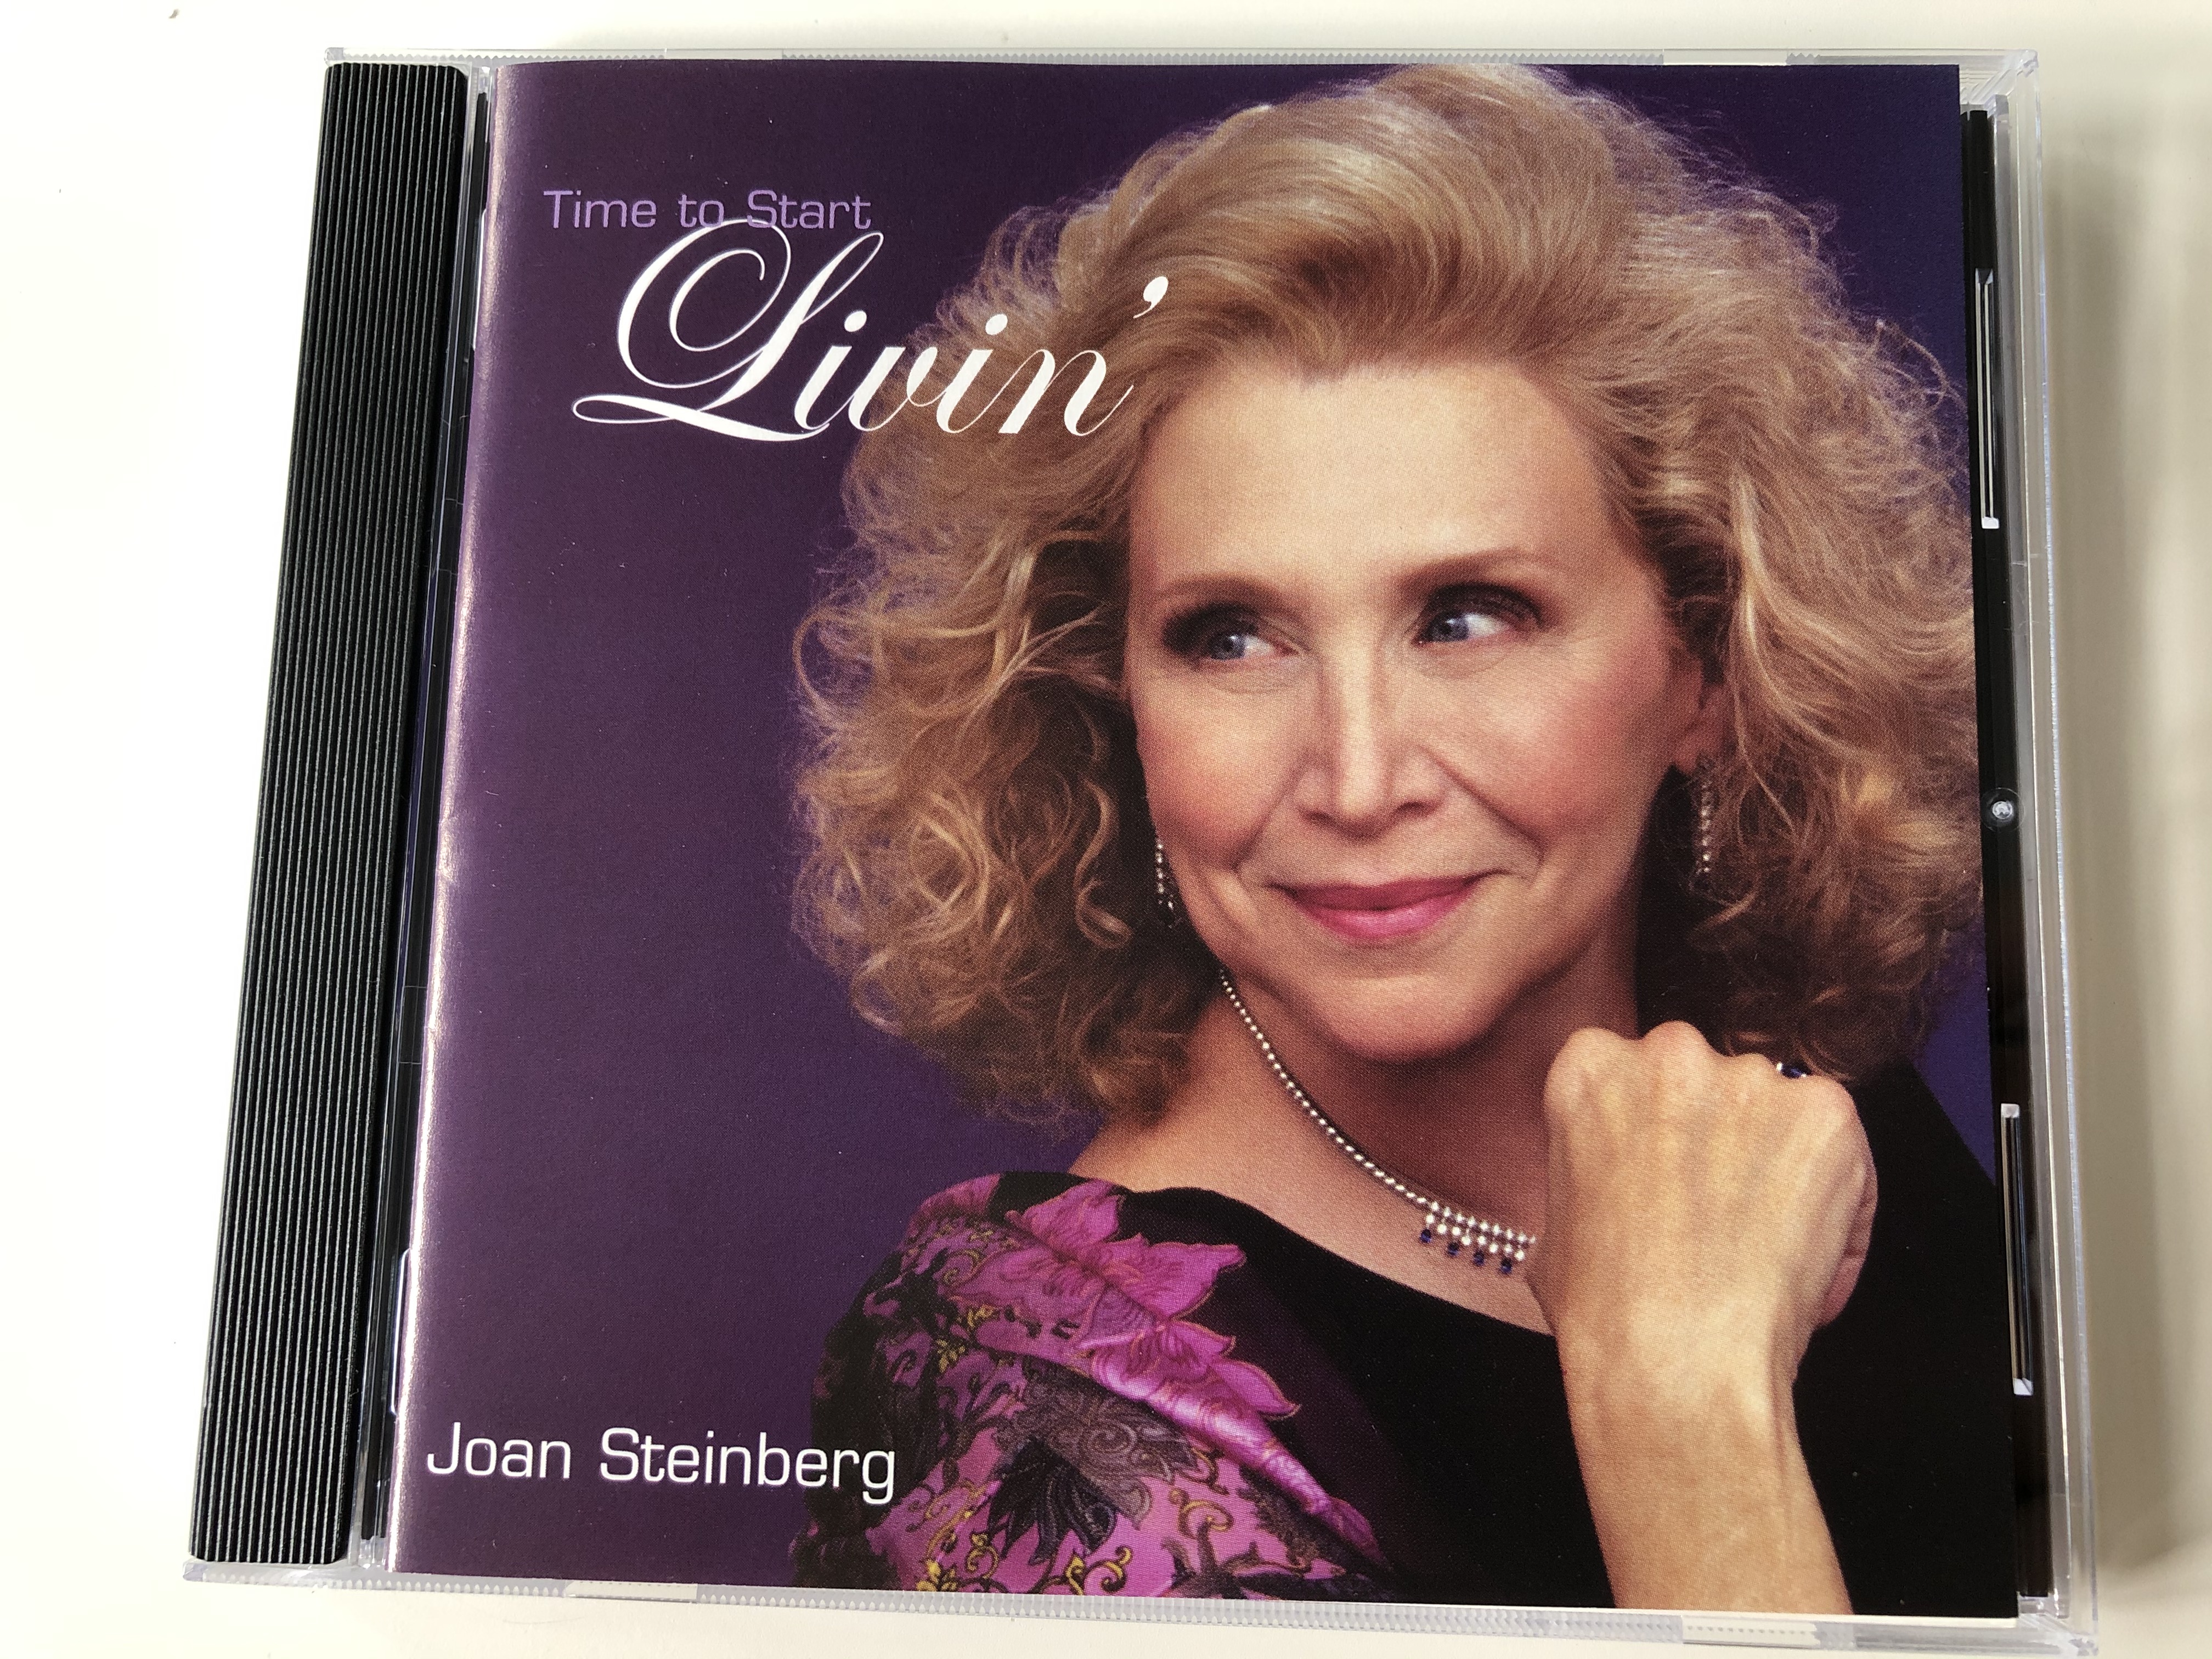 time-to-start-livin-joan-steinberg-chan2ze-records-audio-cd-2002-js-cd-122002-1-.jpg